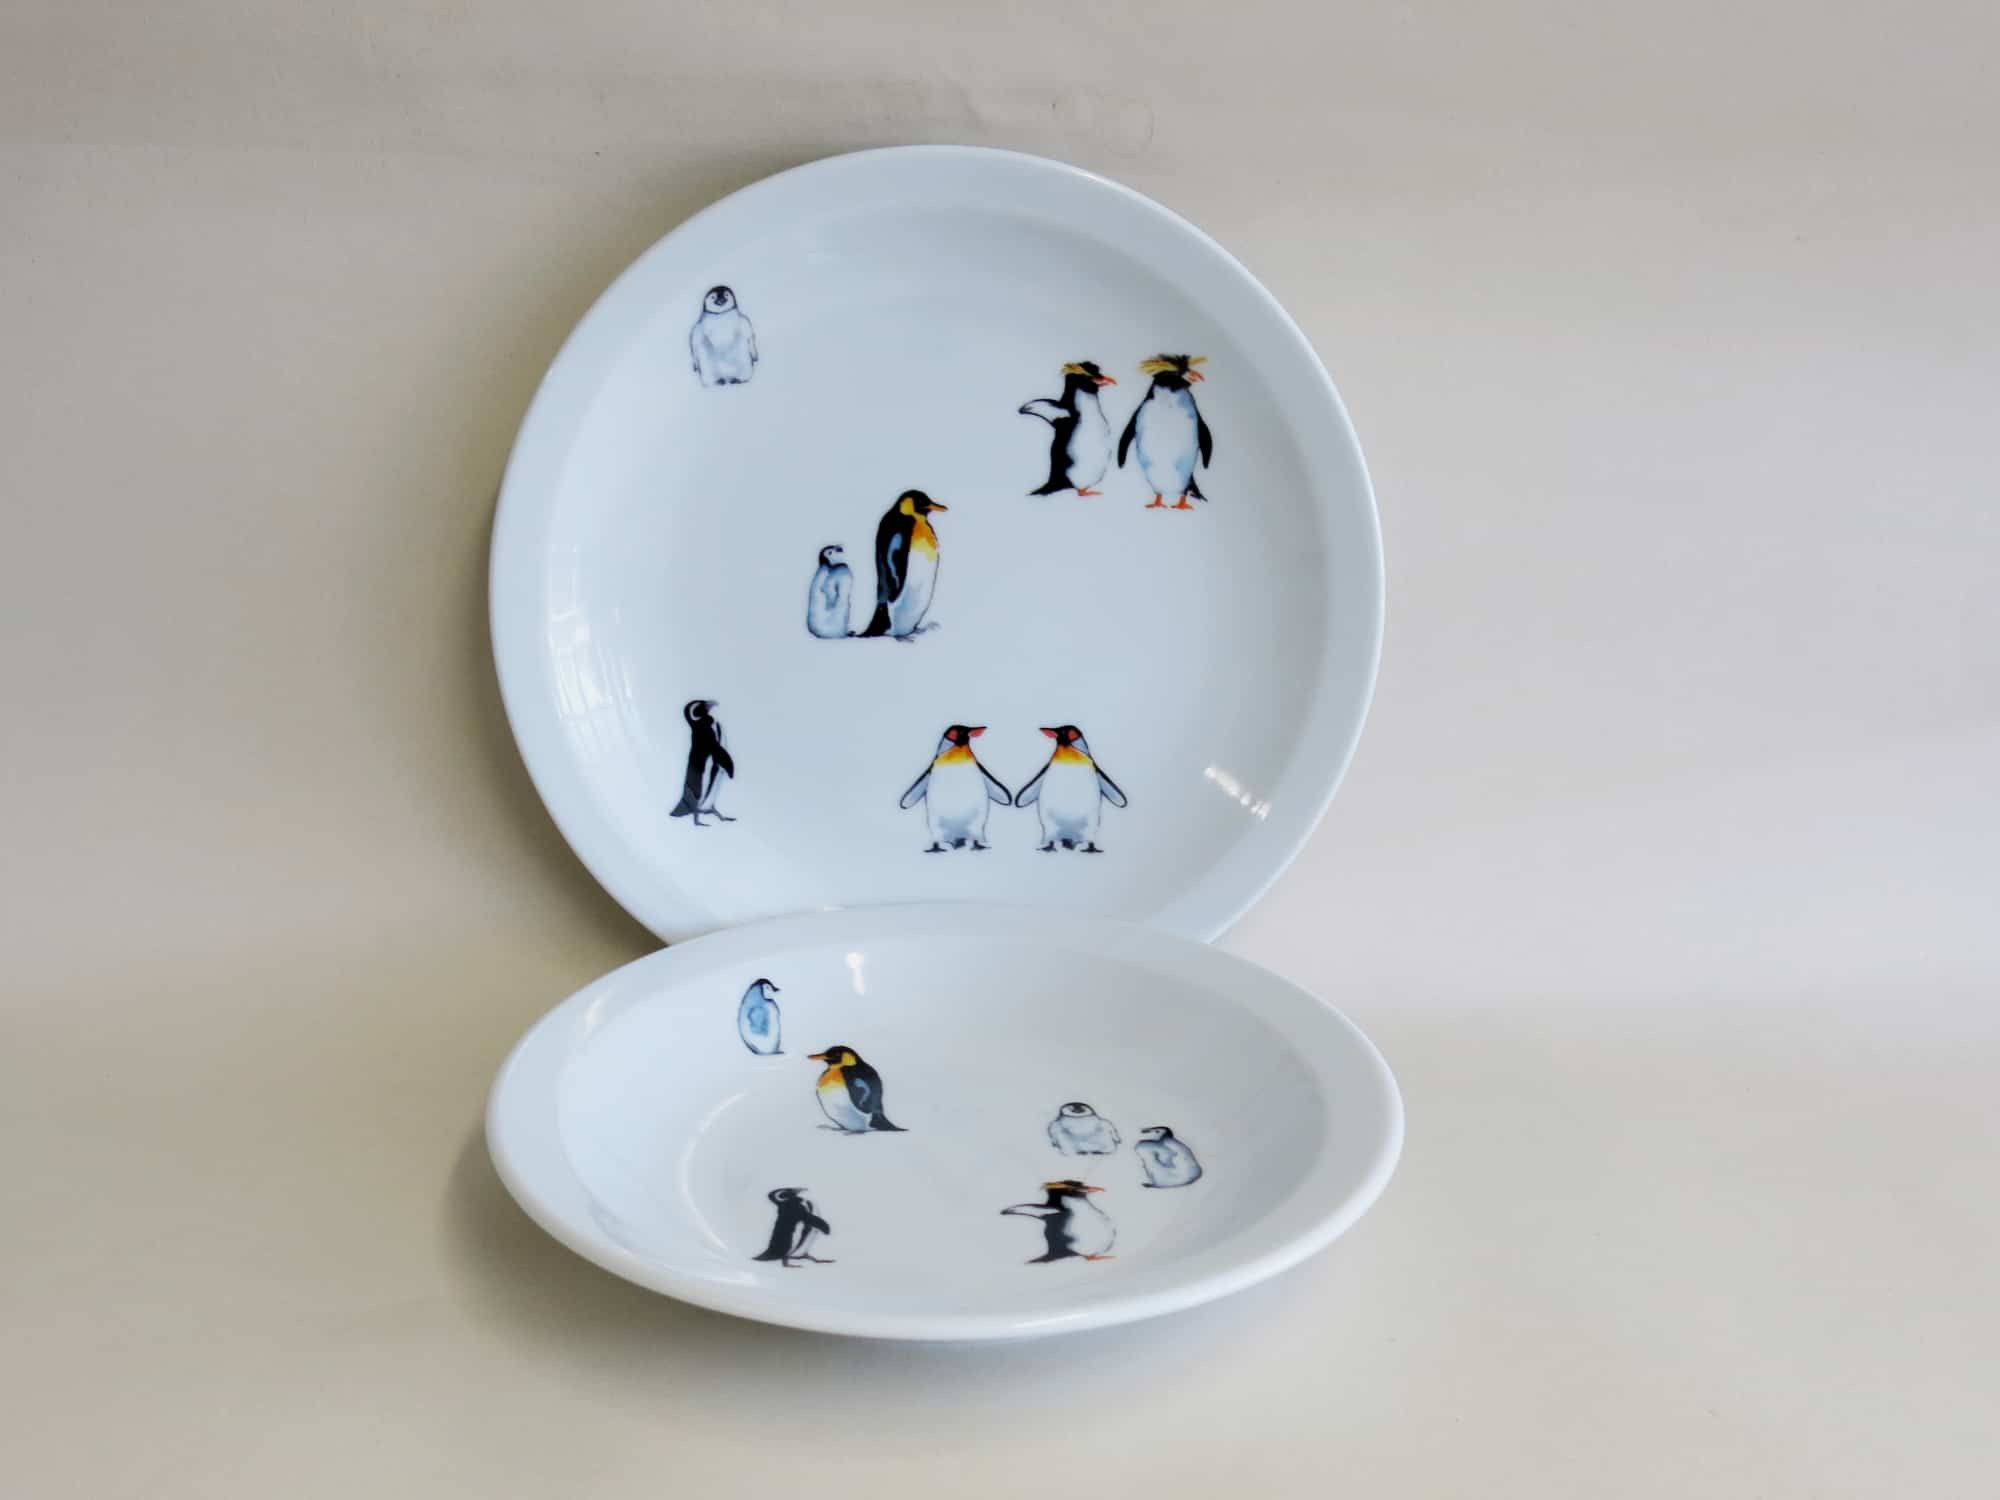 Frühstücksteller mit drolligen Pinguinmotiven, auch mit Namen